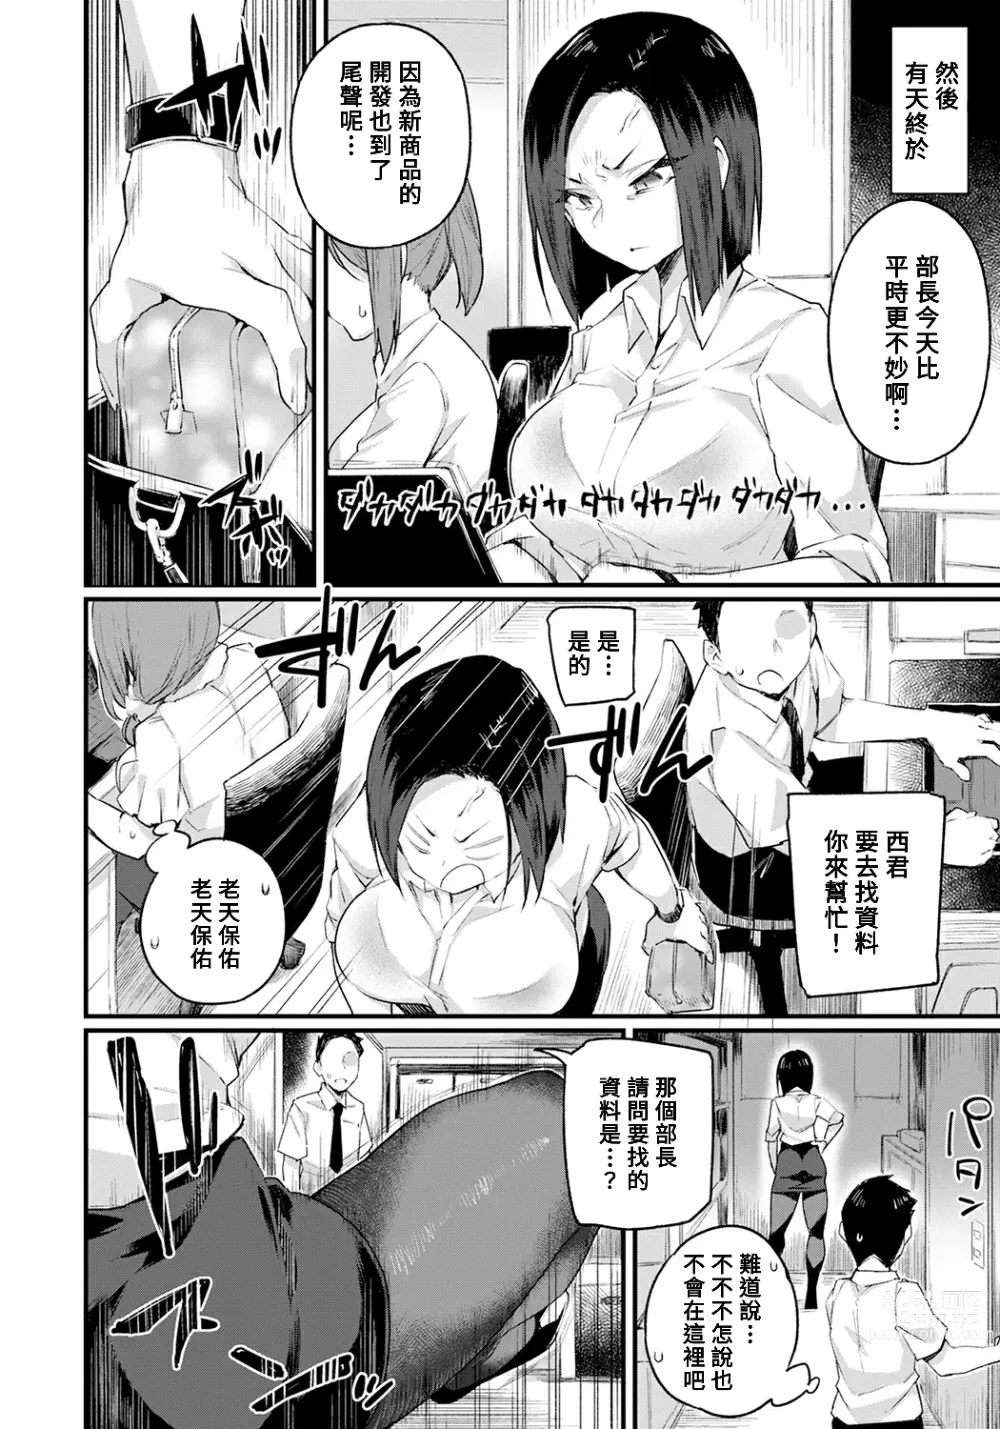 Page 8 of manga Kowamote Joushi wa Baburitai